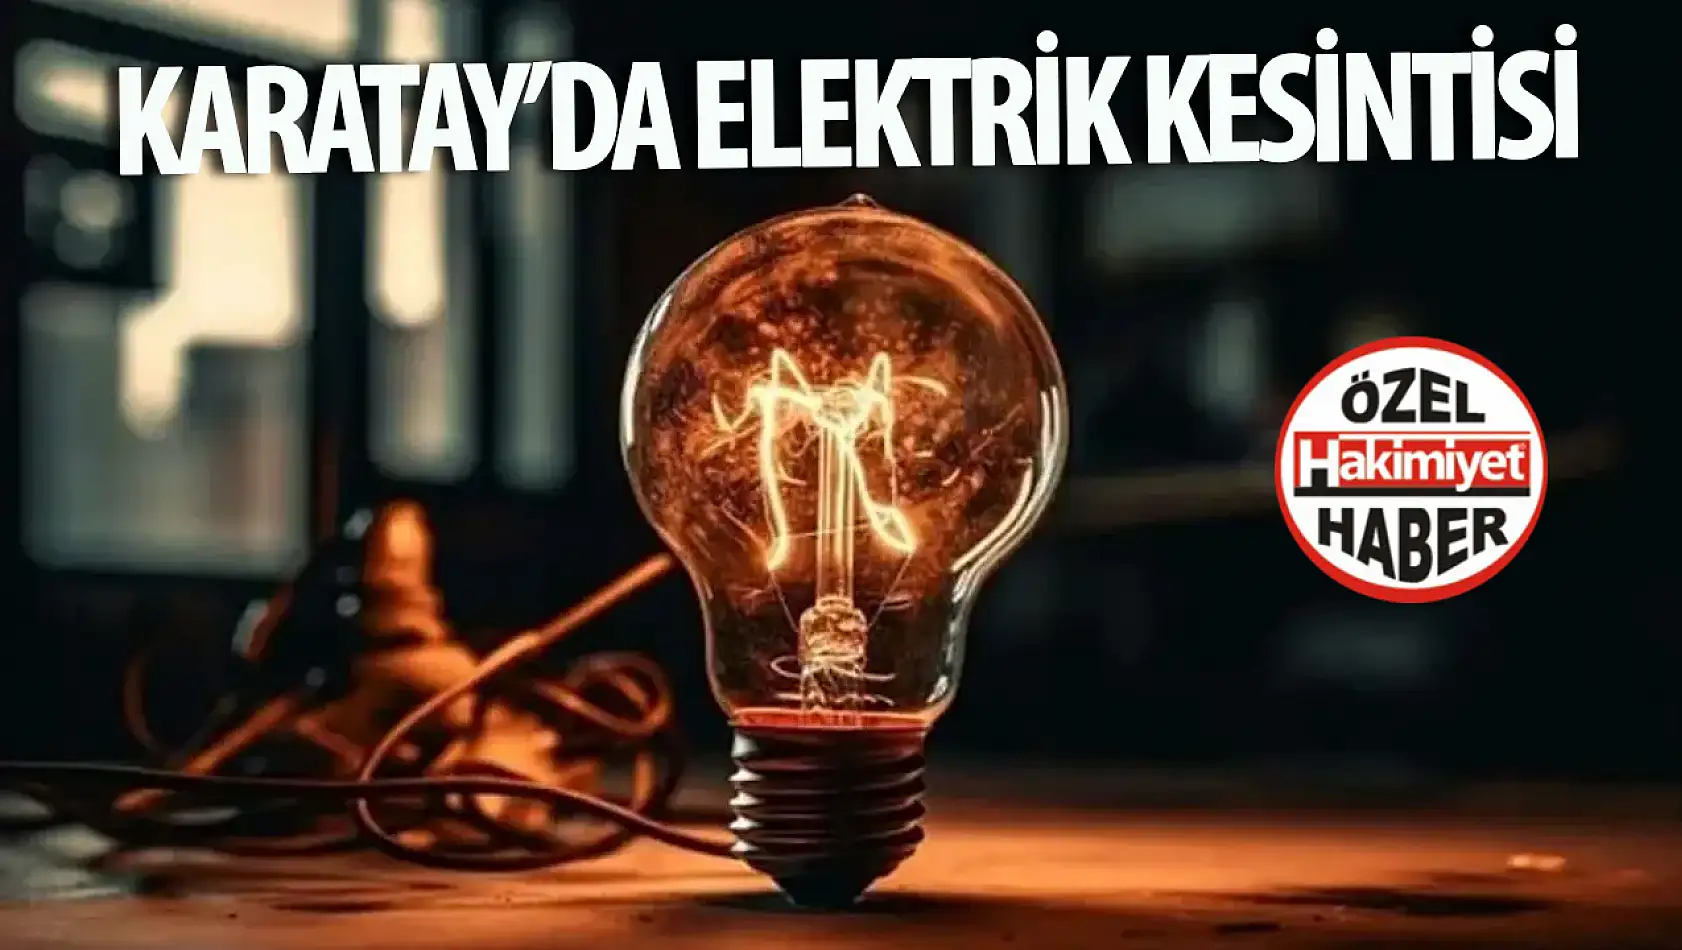 Konya Karatay'da Planlı Elektrik Kesintisi Uygulanacak